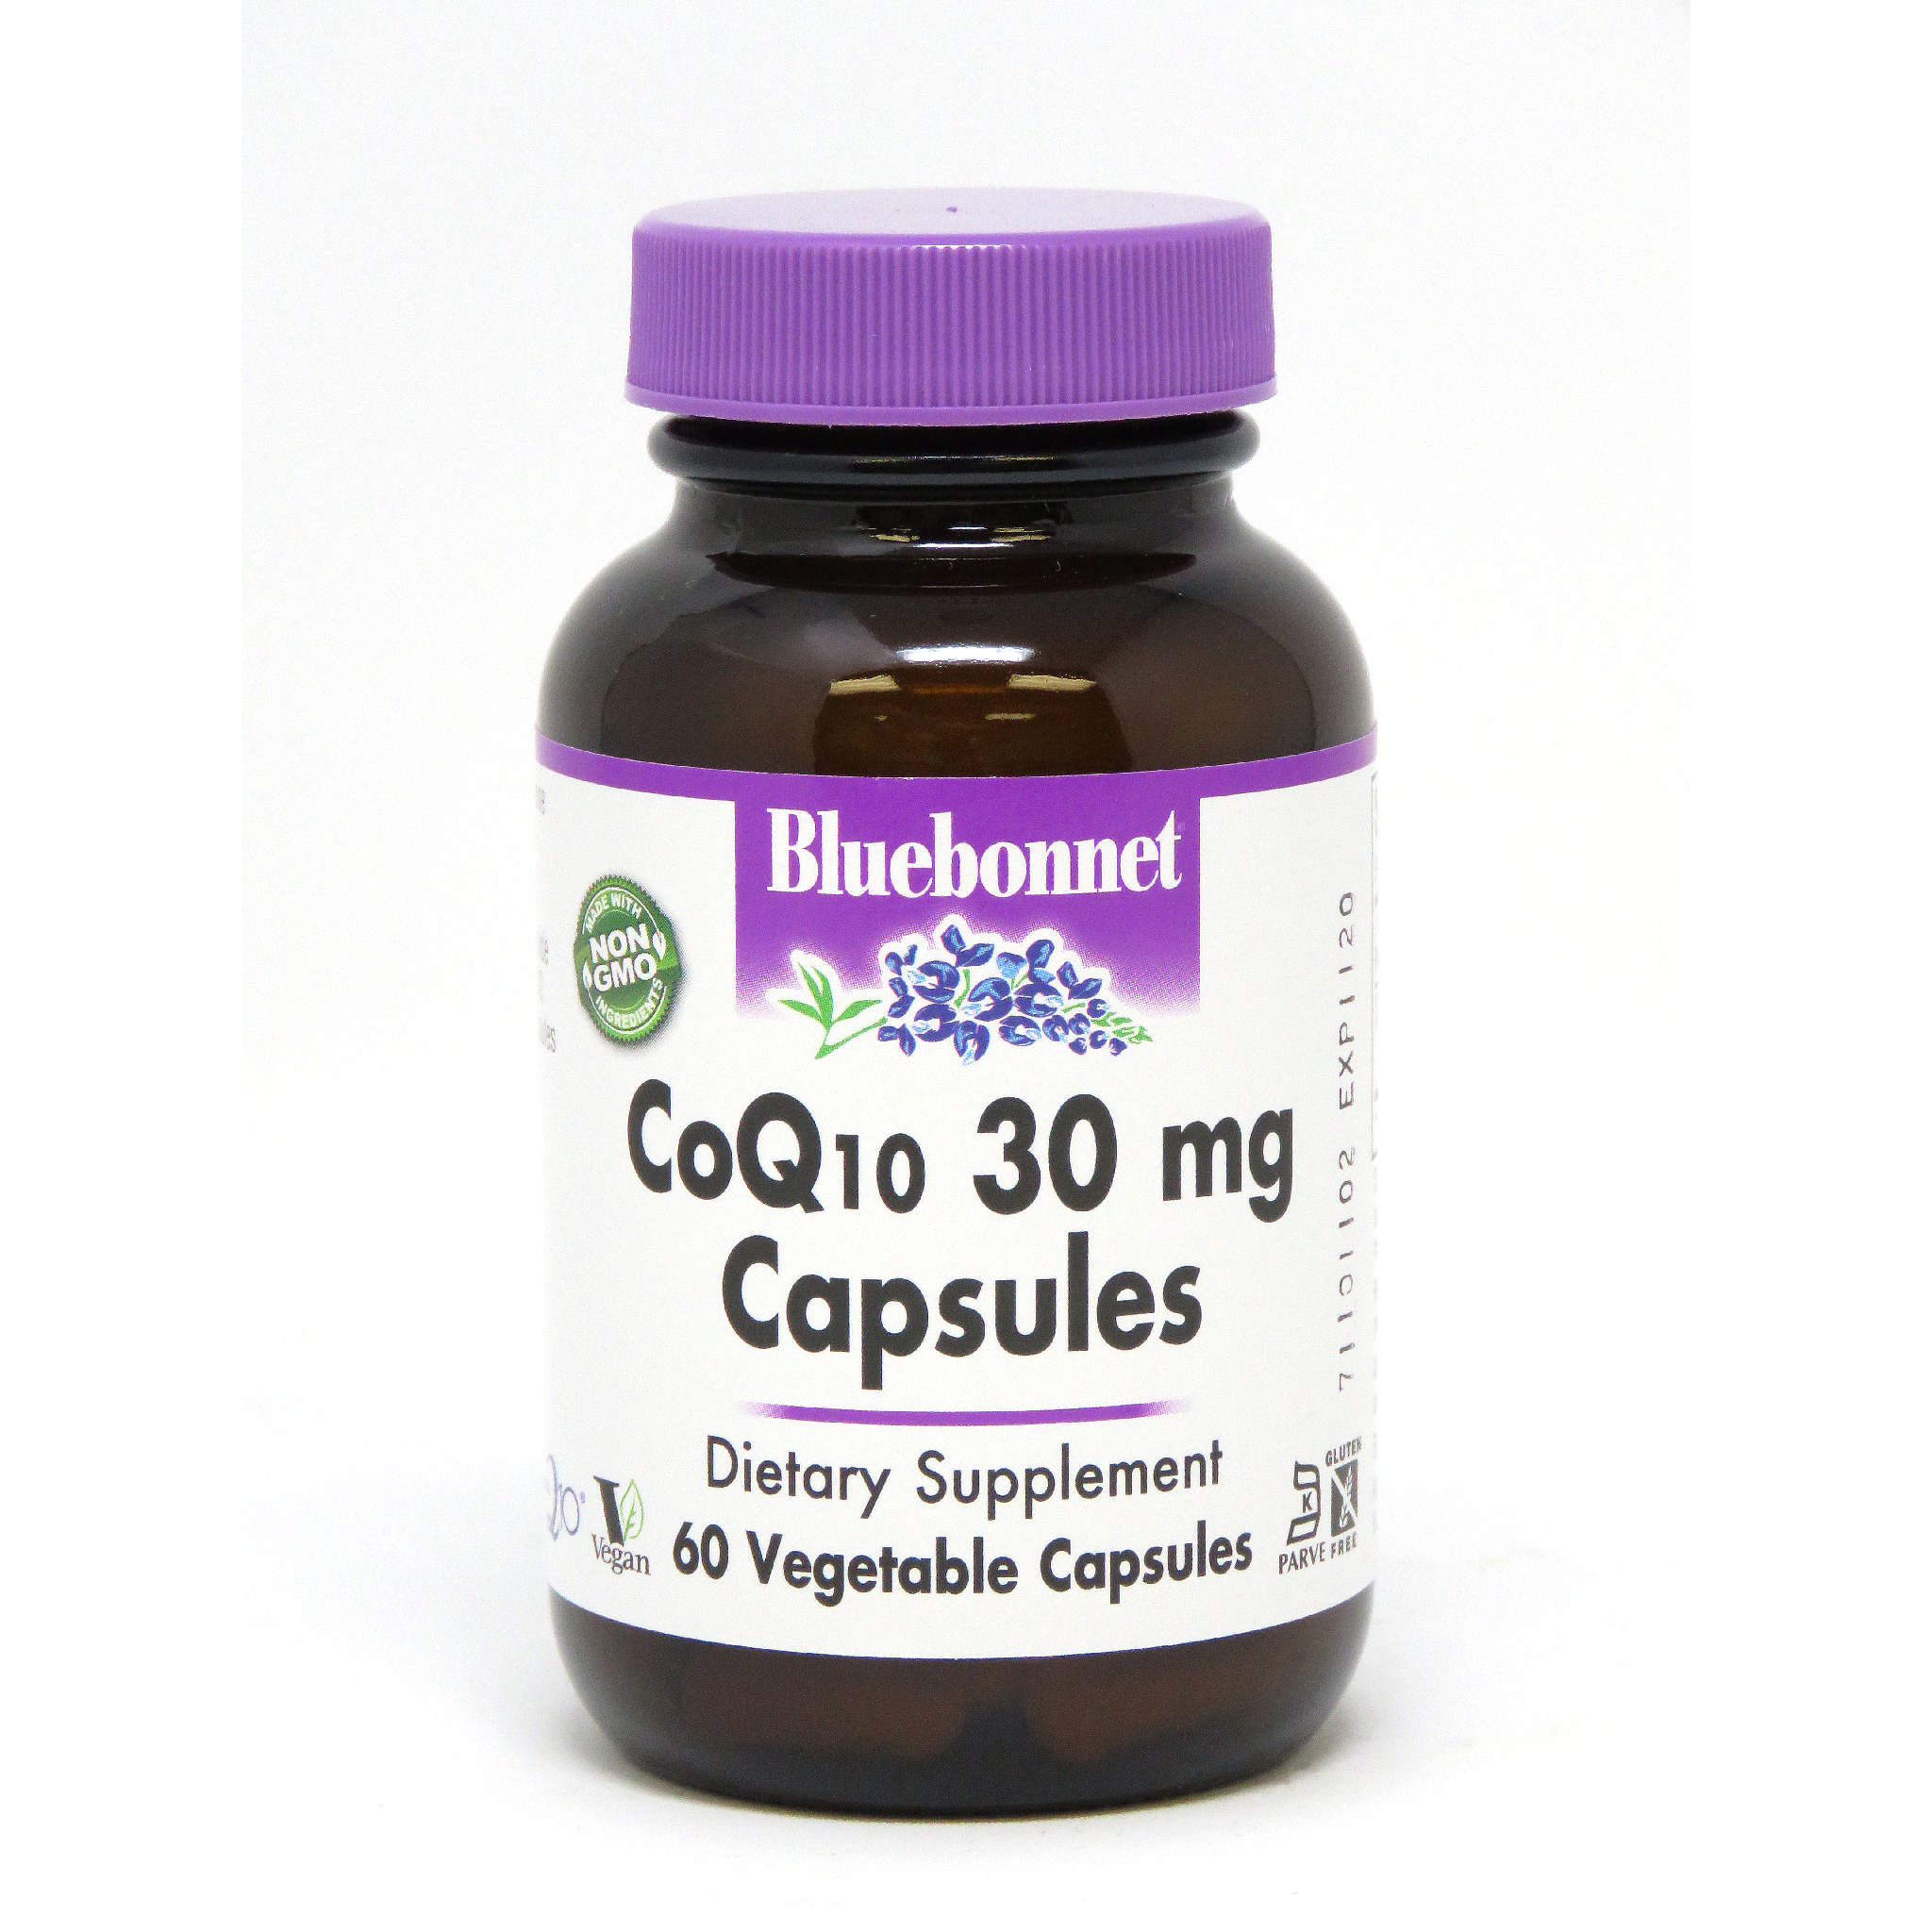 Bluebonnet - Coq10 60 mg softgel